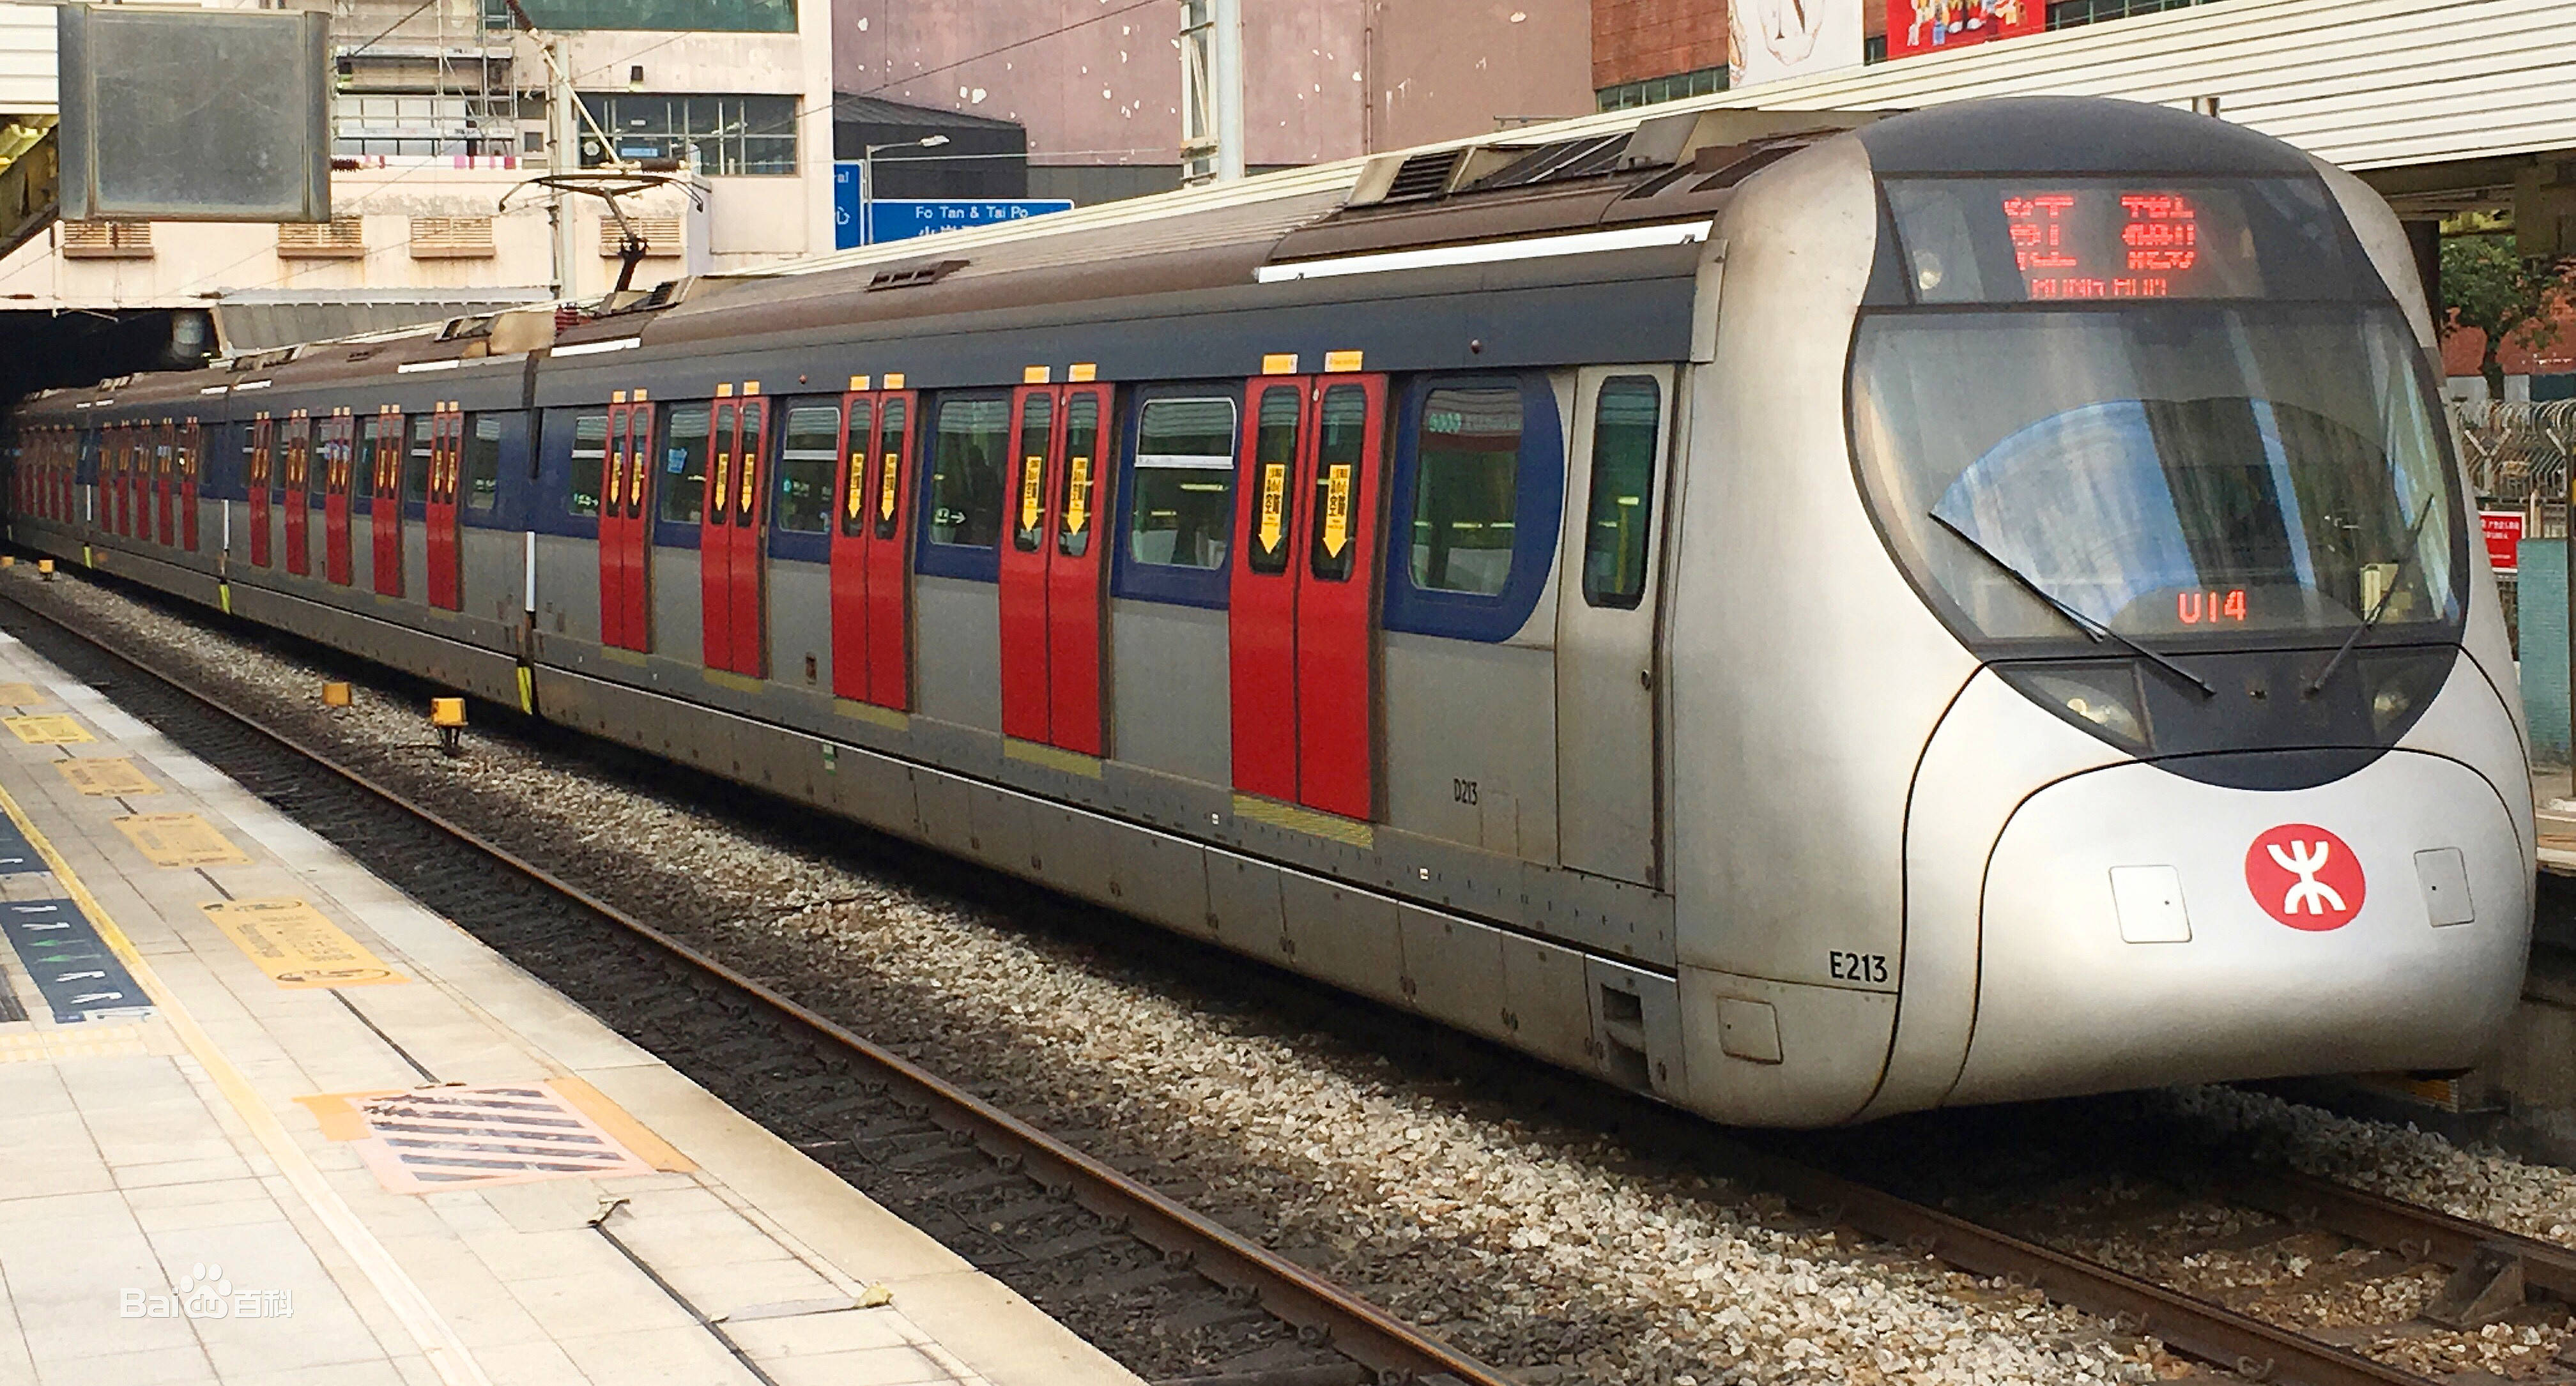 原创香港东铁线过海段新轨道接驳工程完成,今日恢复正常运营